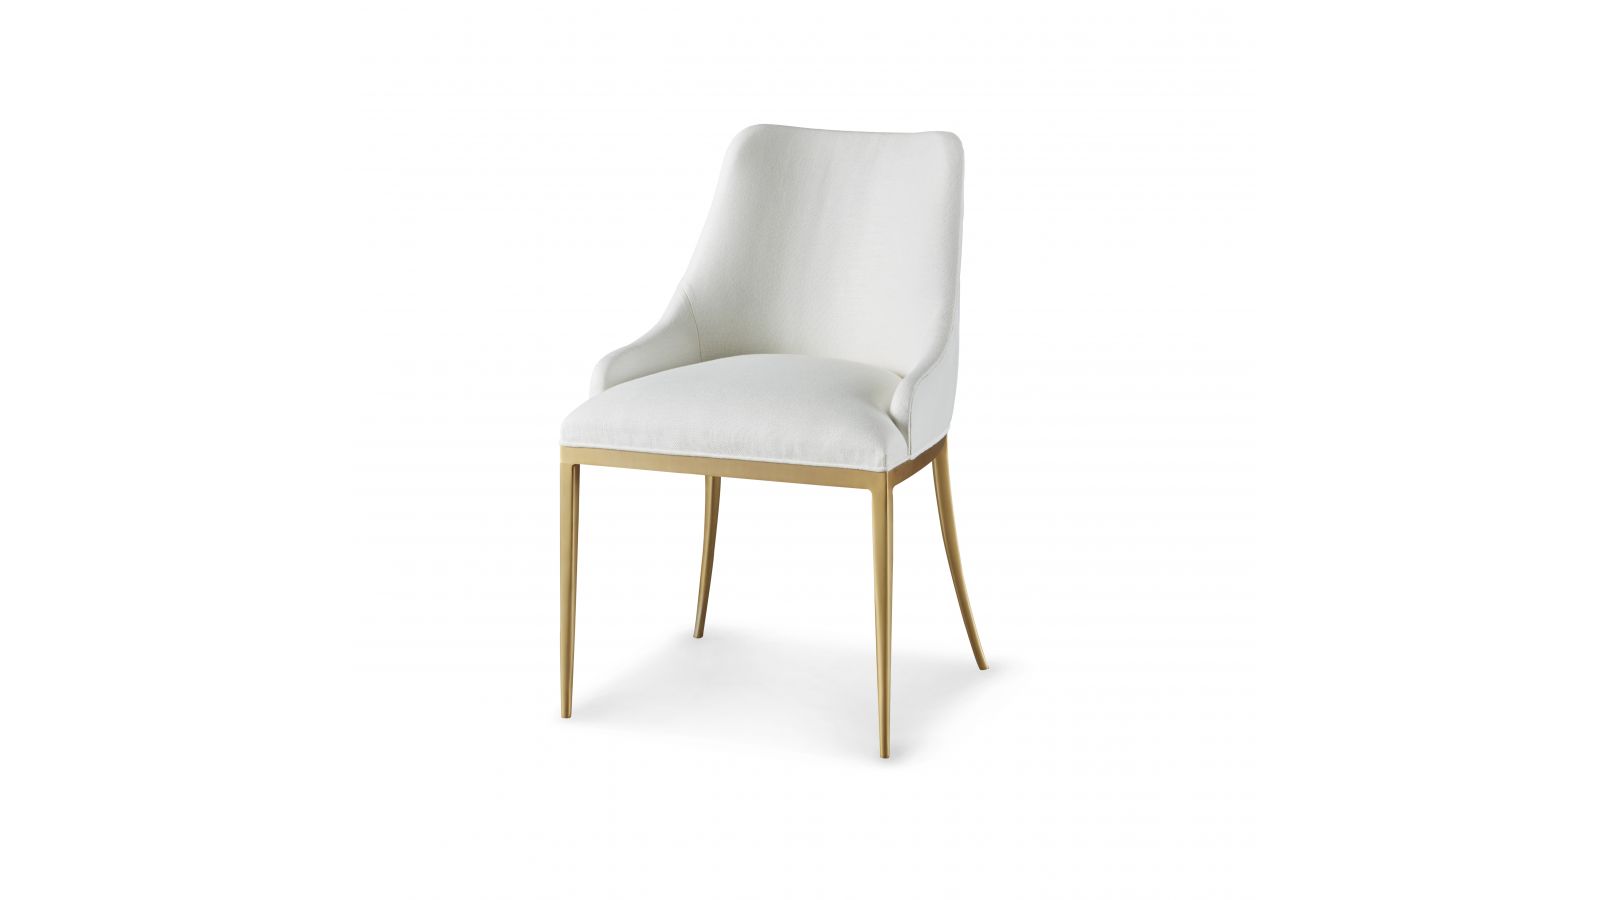 Stiletto Chair